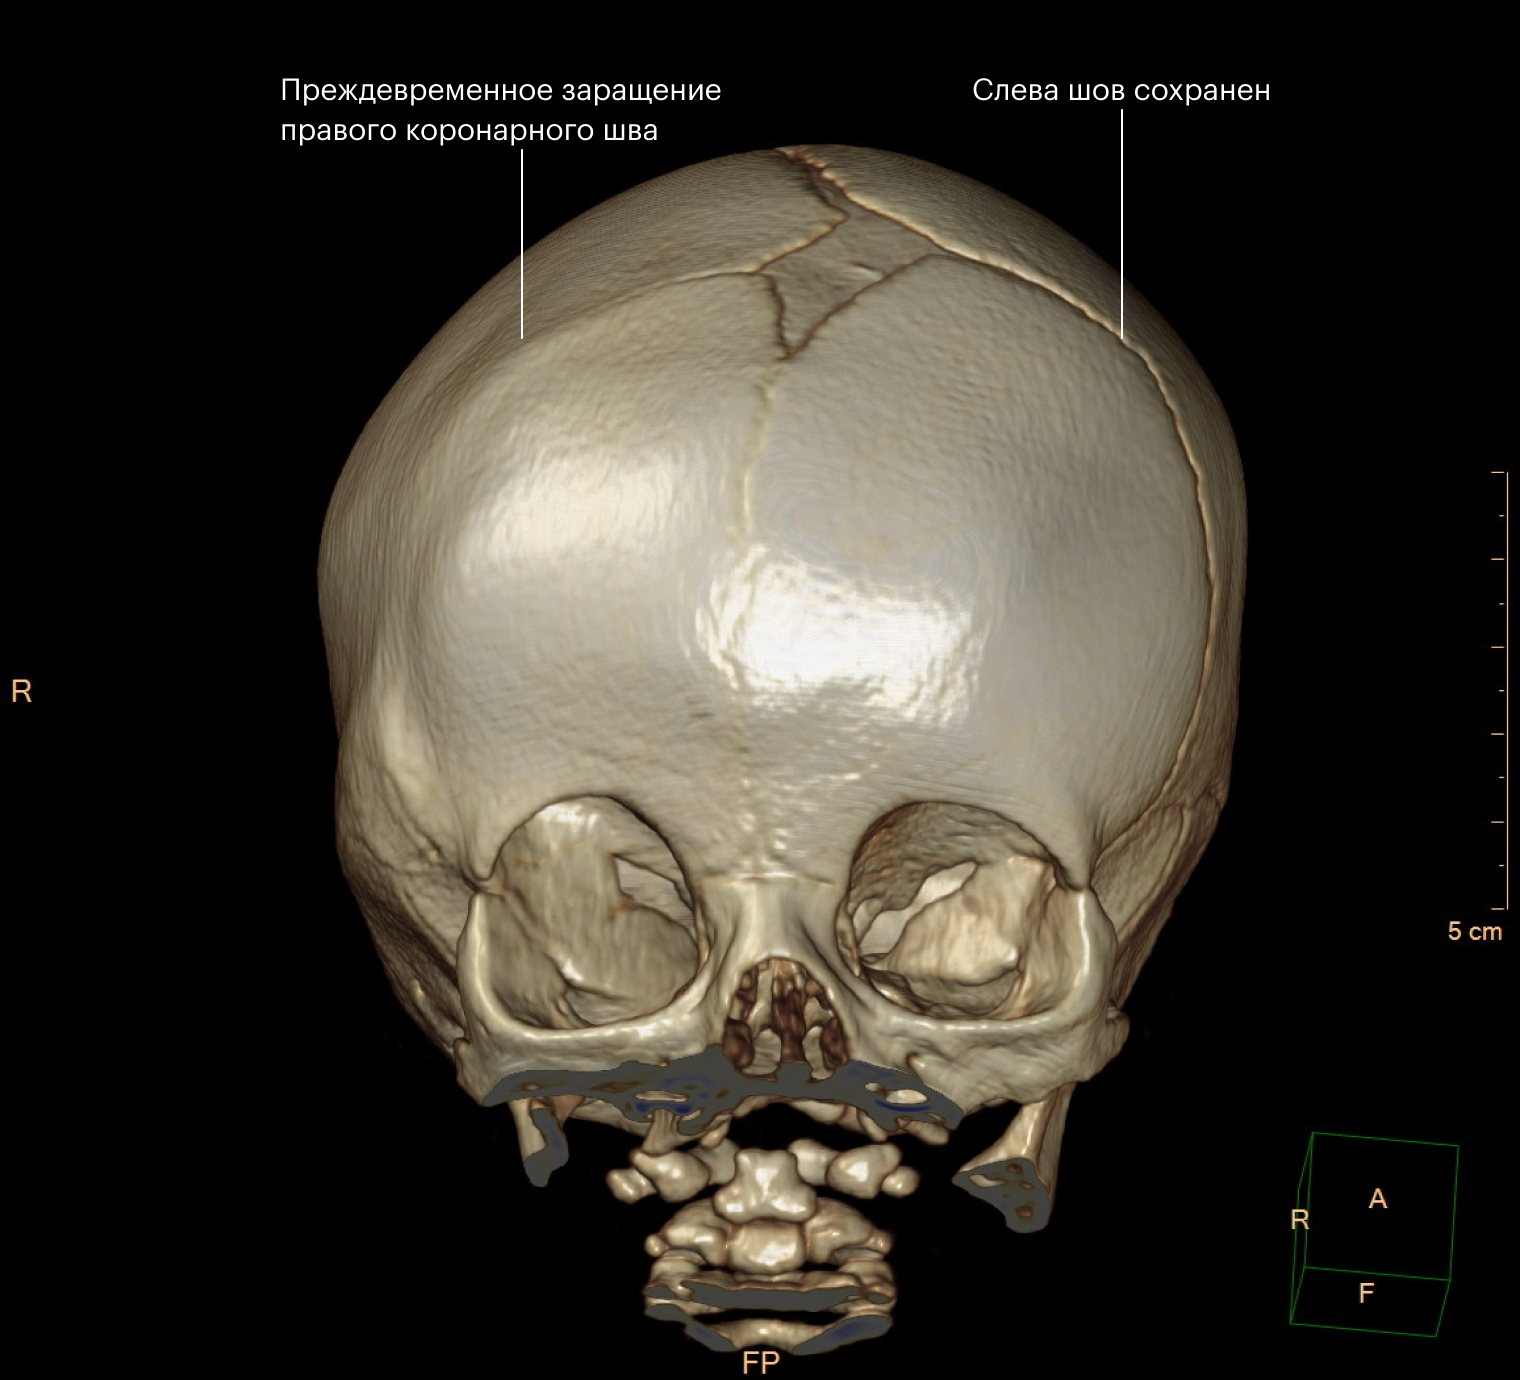 КТ костей черепа с 3D⁠-⁠реконструкцией. Заращение правого коронарного шва и уплощение лба с этой стороны. Источник: radiopaedia.org